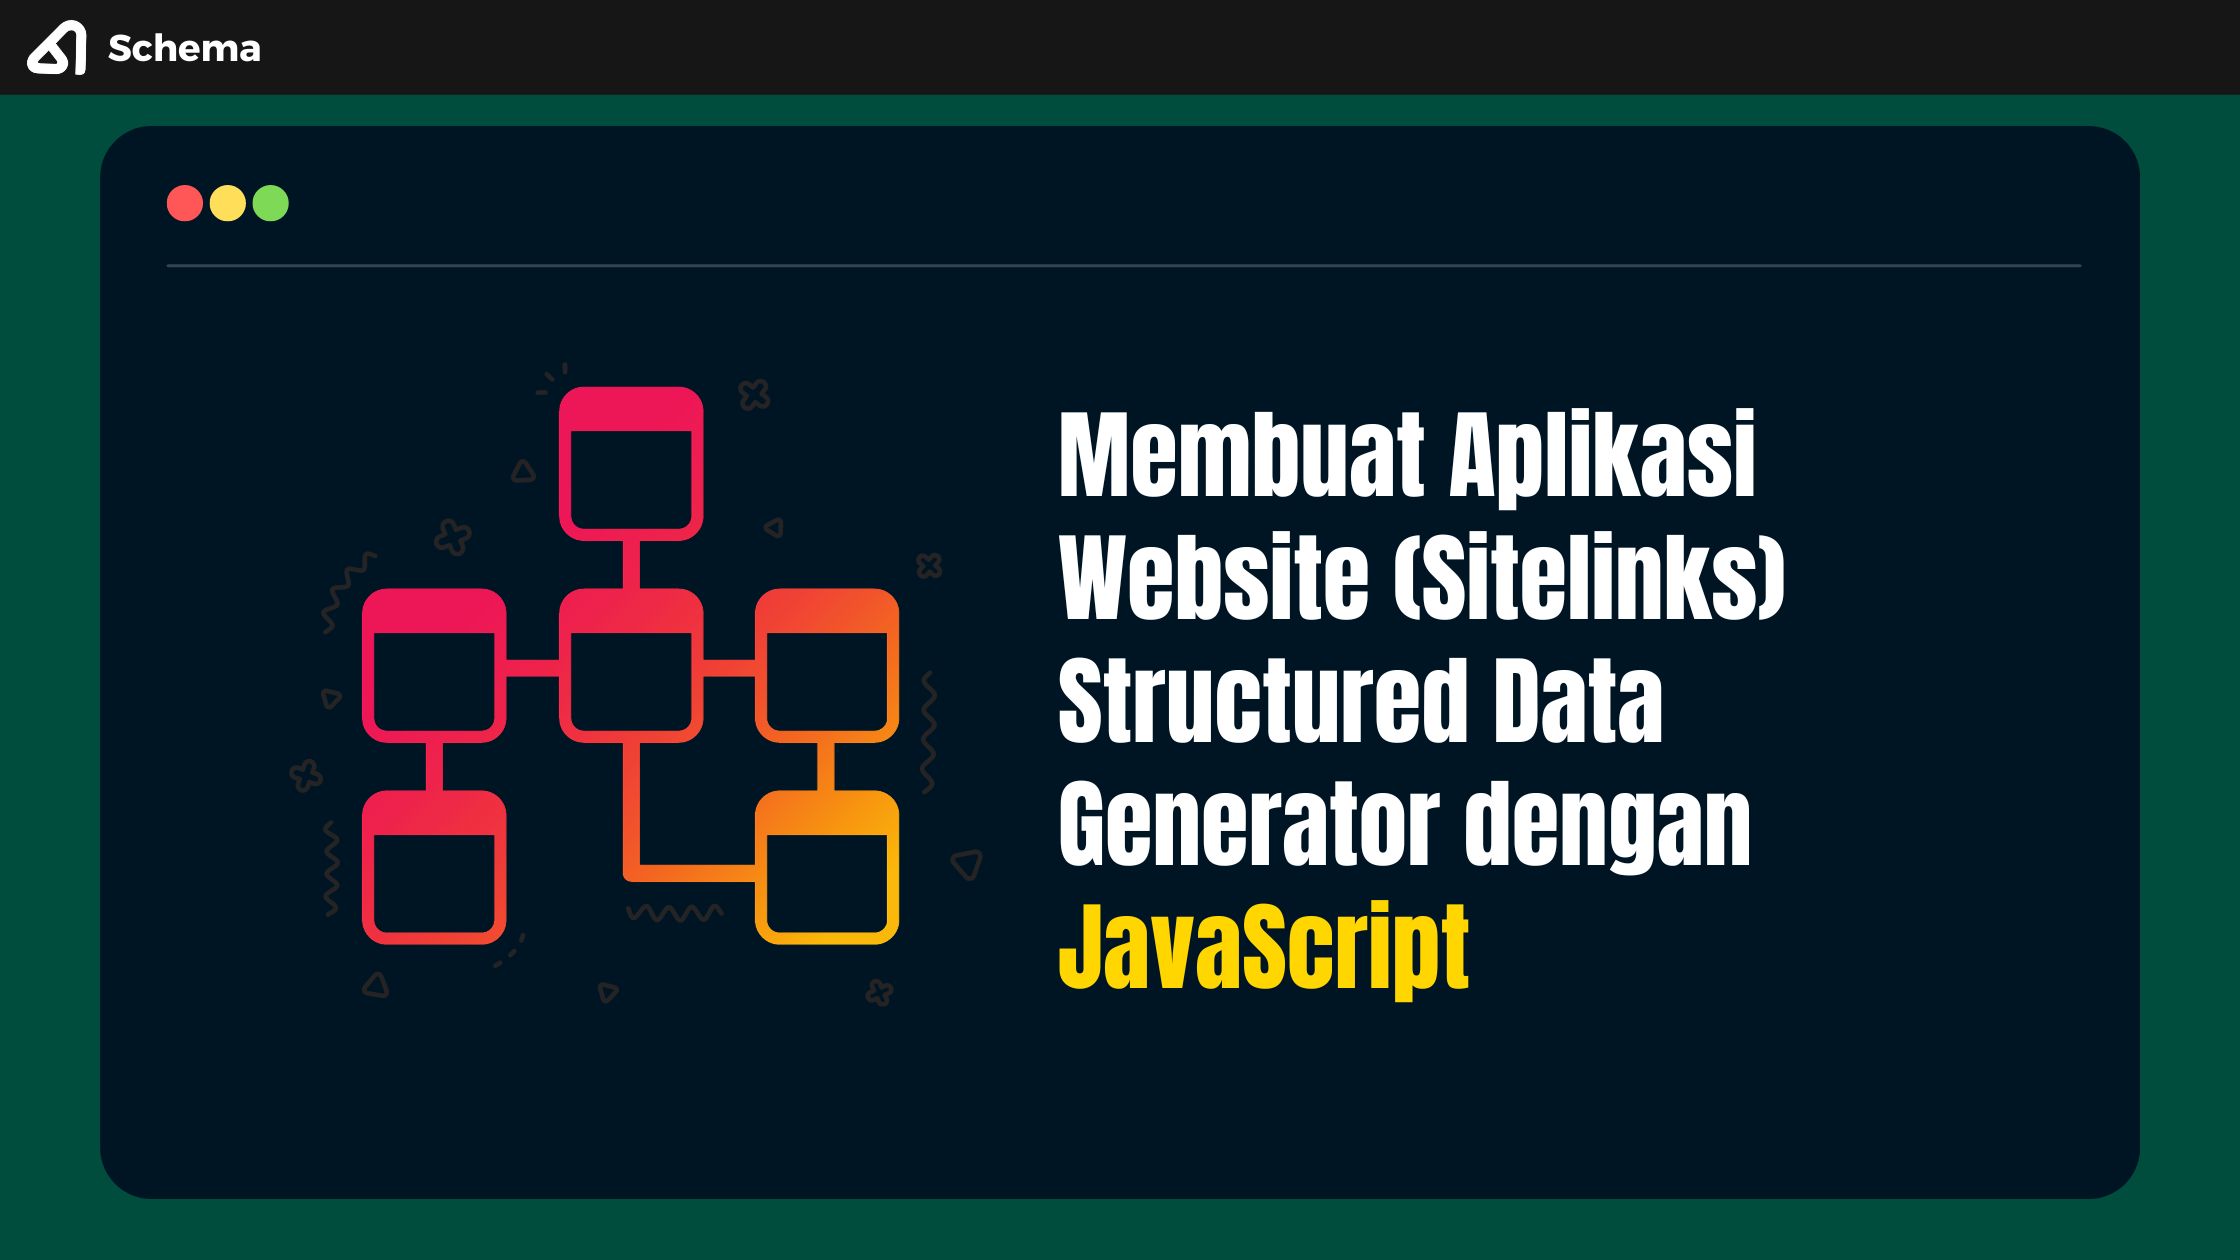 Membuat Aplikasi Website (Sitelinks) Structured Data Generator dengan JavaScript